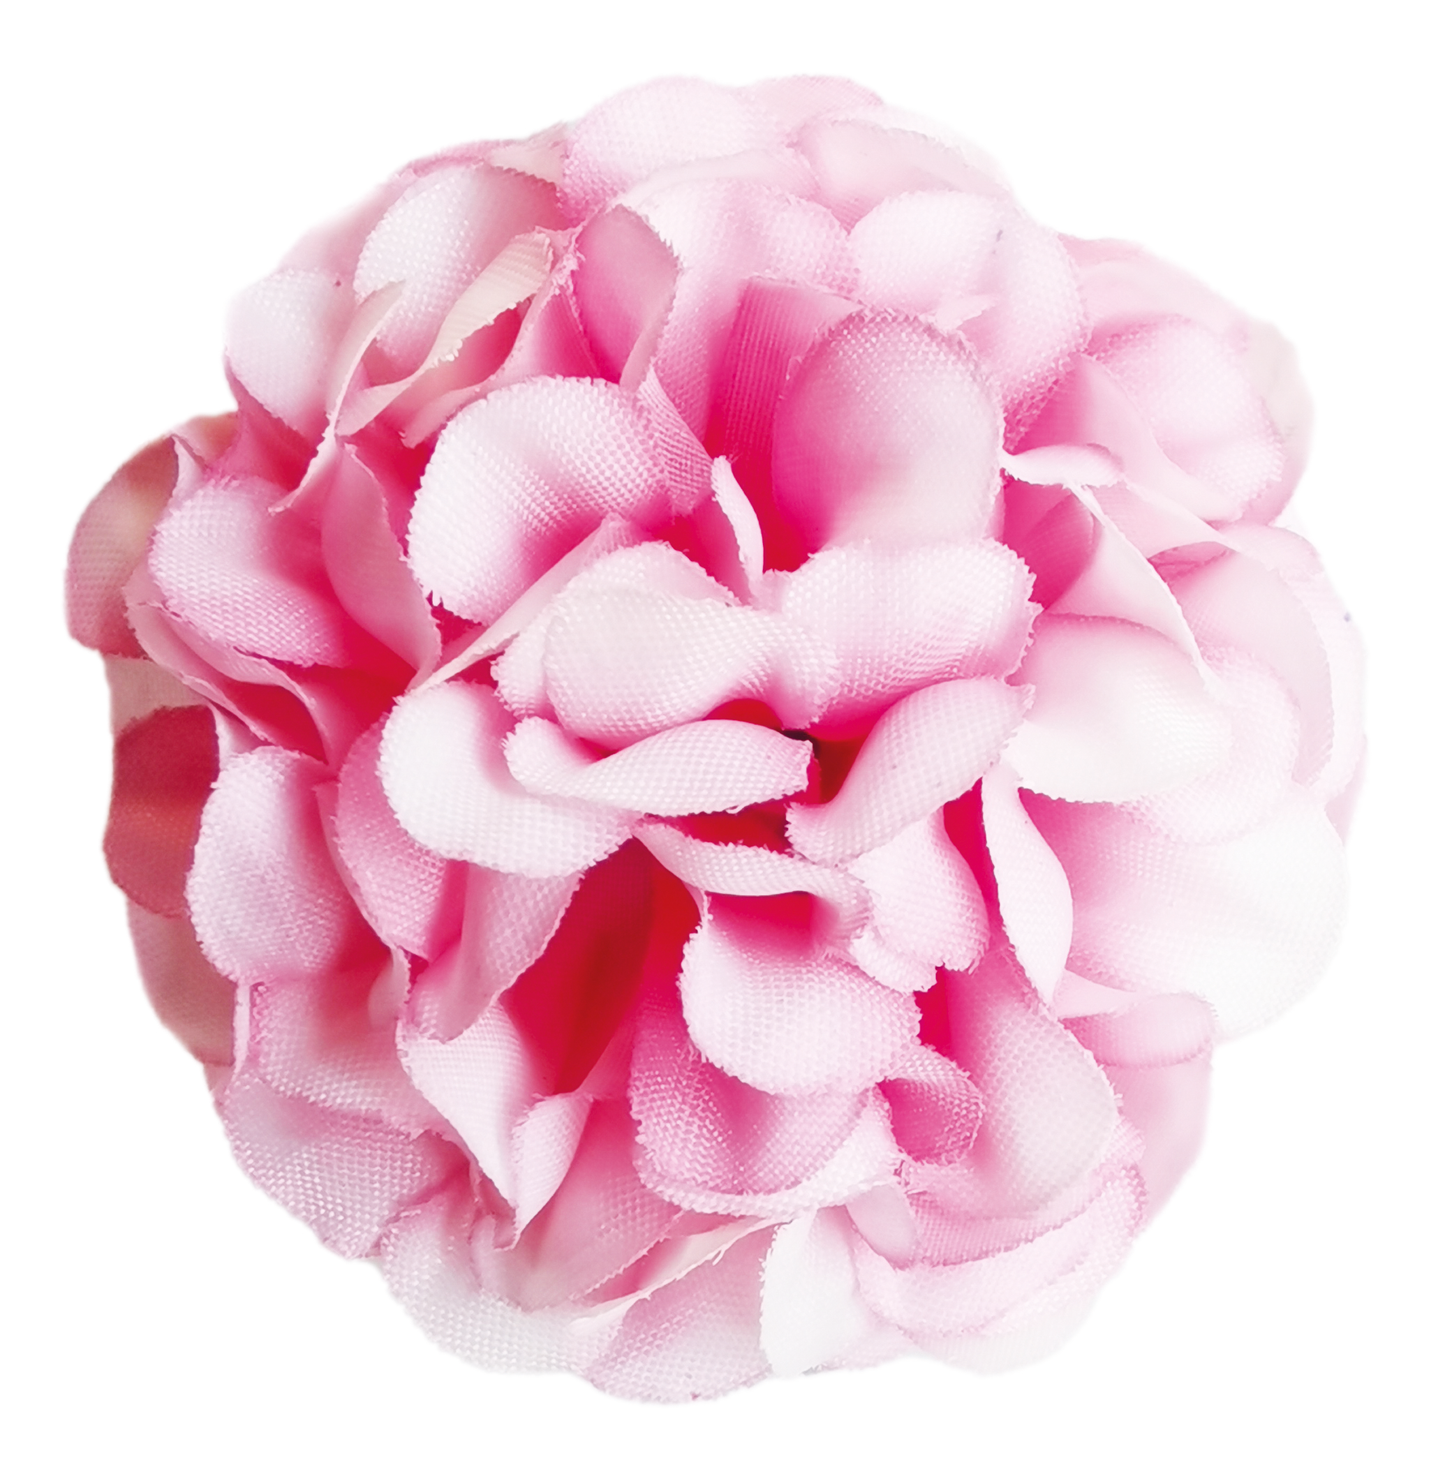 Flower Making Kit - Cute Camellias - PINK - FF01PK